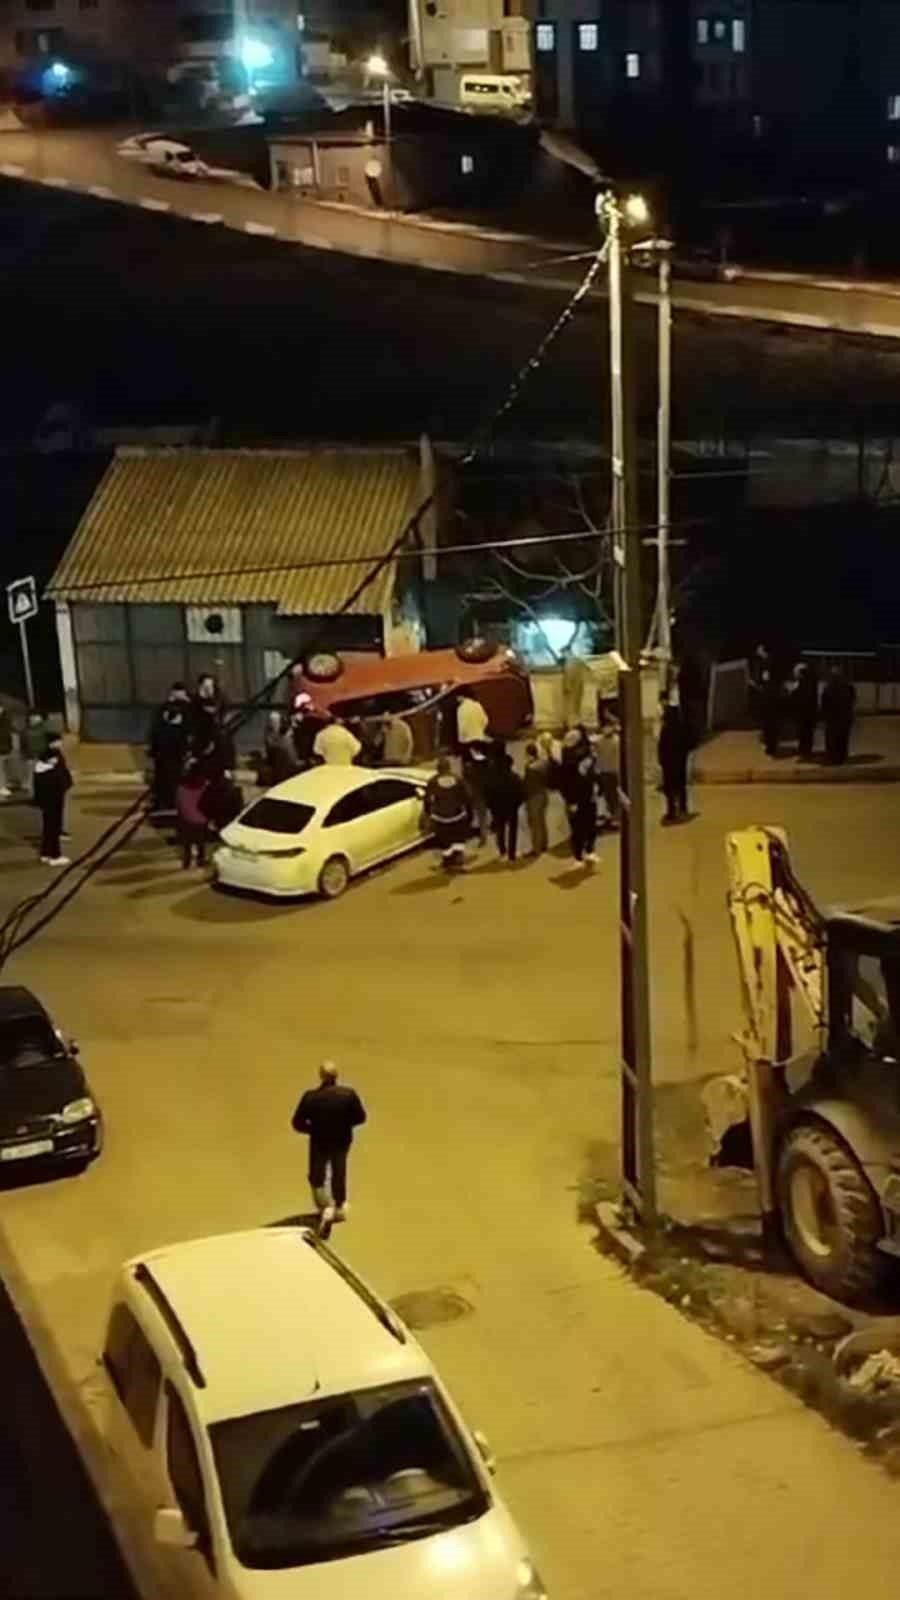 Arnavutköy’de ilginç kaza: Otomobil kaldırımda yan durdu
